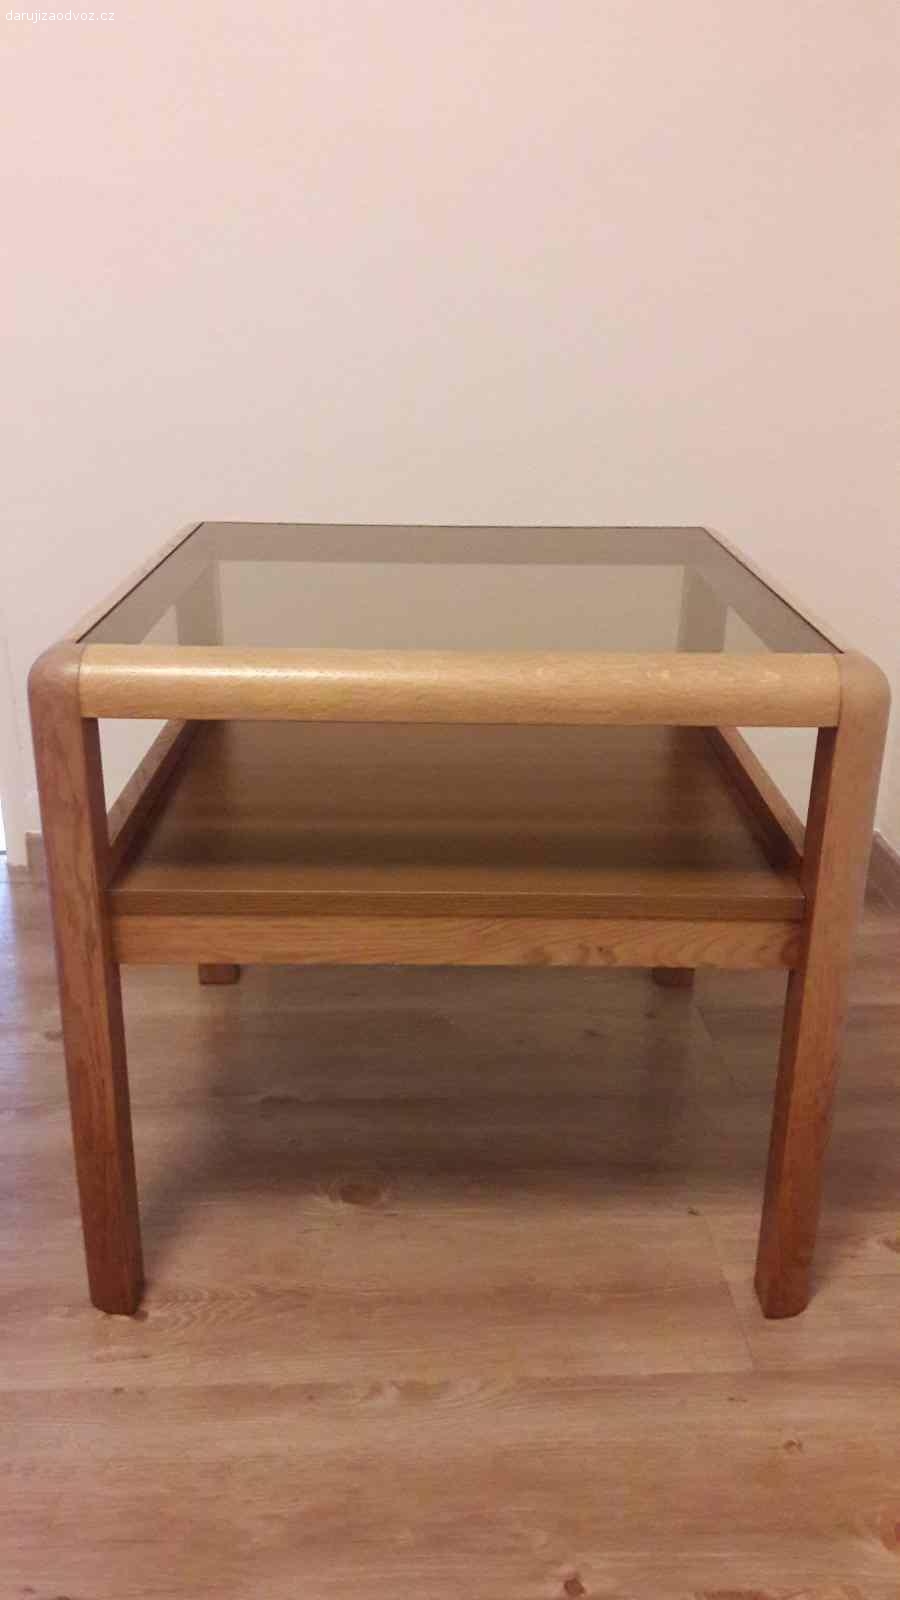 Daruji konferenční stolek. Malý konferenční stolek, dřevo - masiv, horní část - sklo. Velmi zachovalý.
Výška: 55 cm
Šířka: 58x58 cm